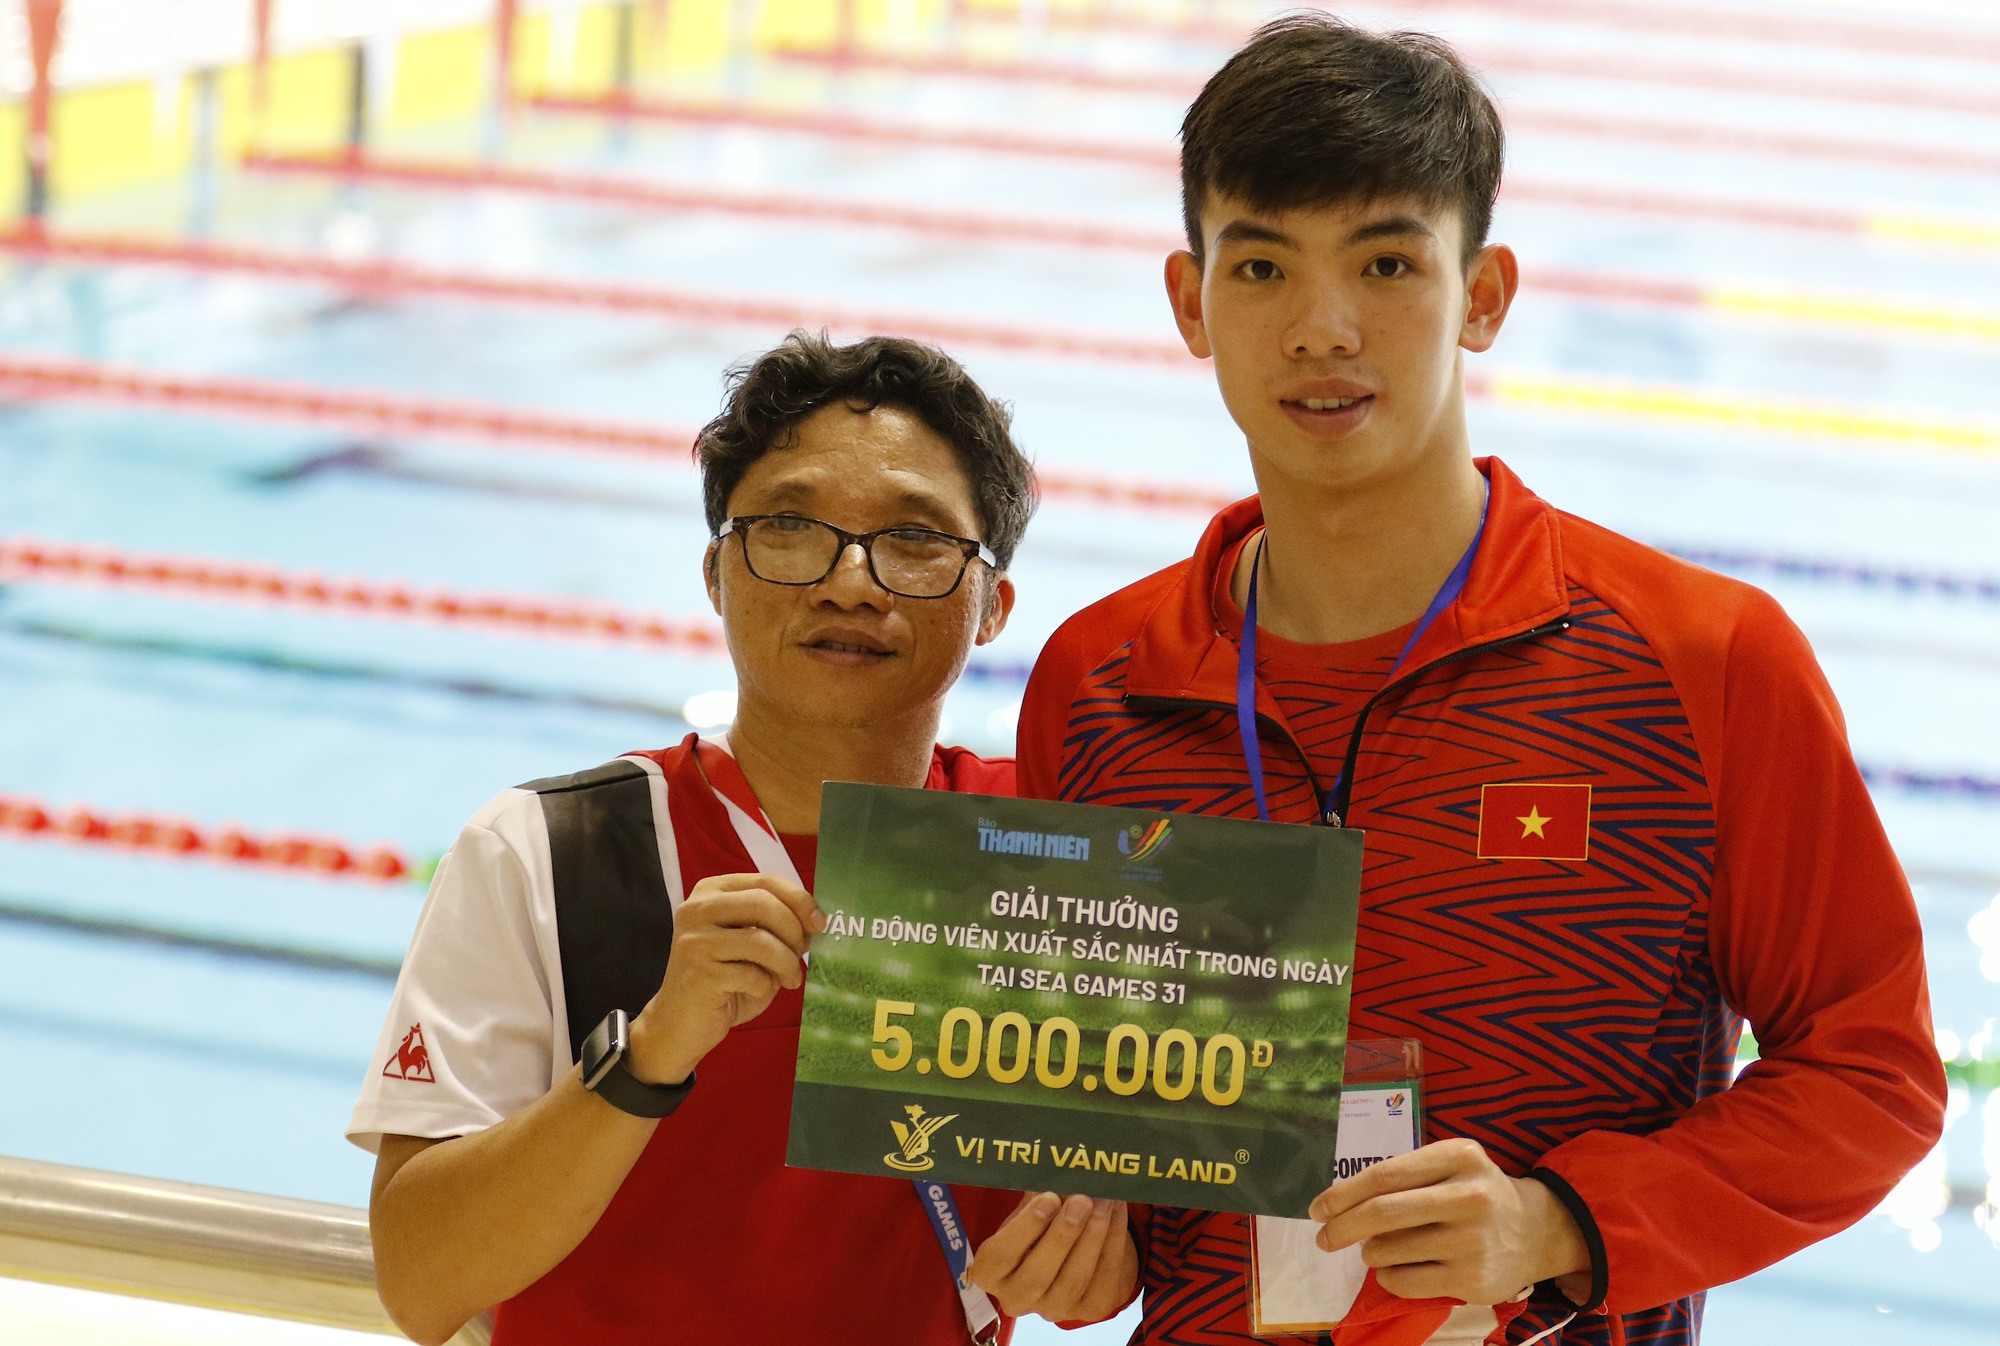 Thành tích đáng nể của Huy Hoàng - VĐV cầm cờ tại SEA Games cho Việt Nam - Ảnh 1.